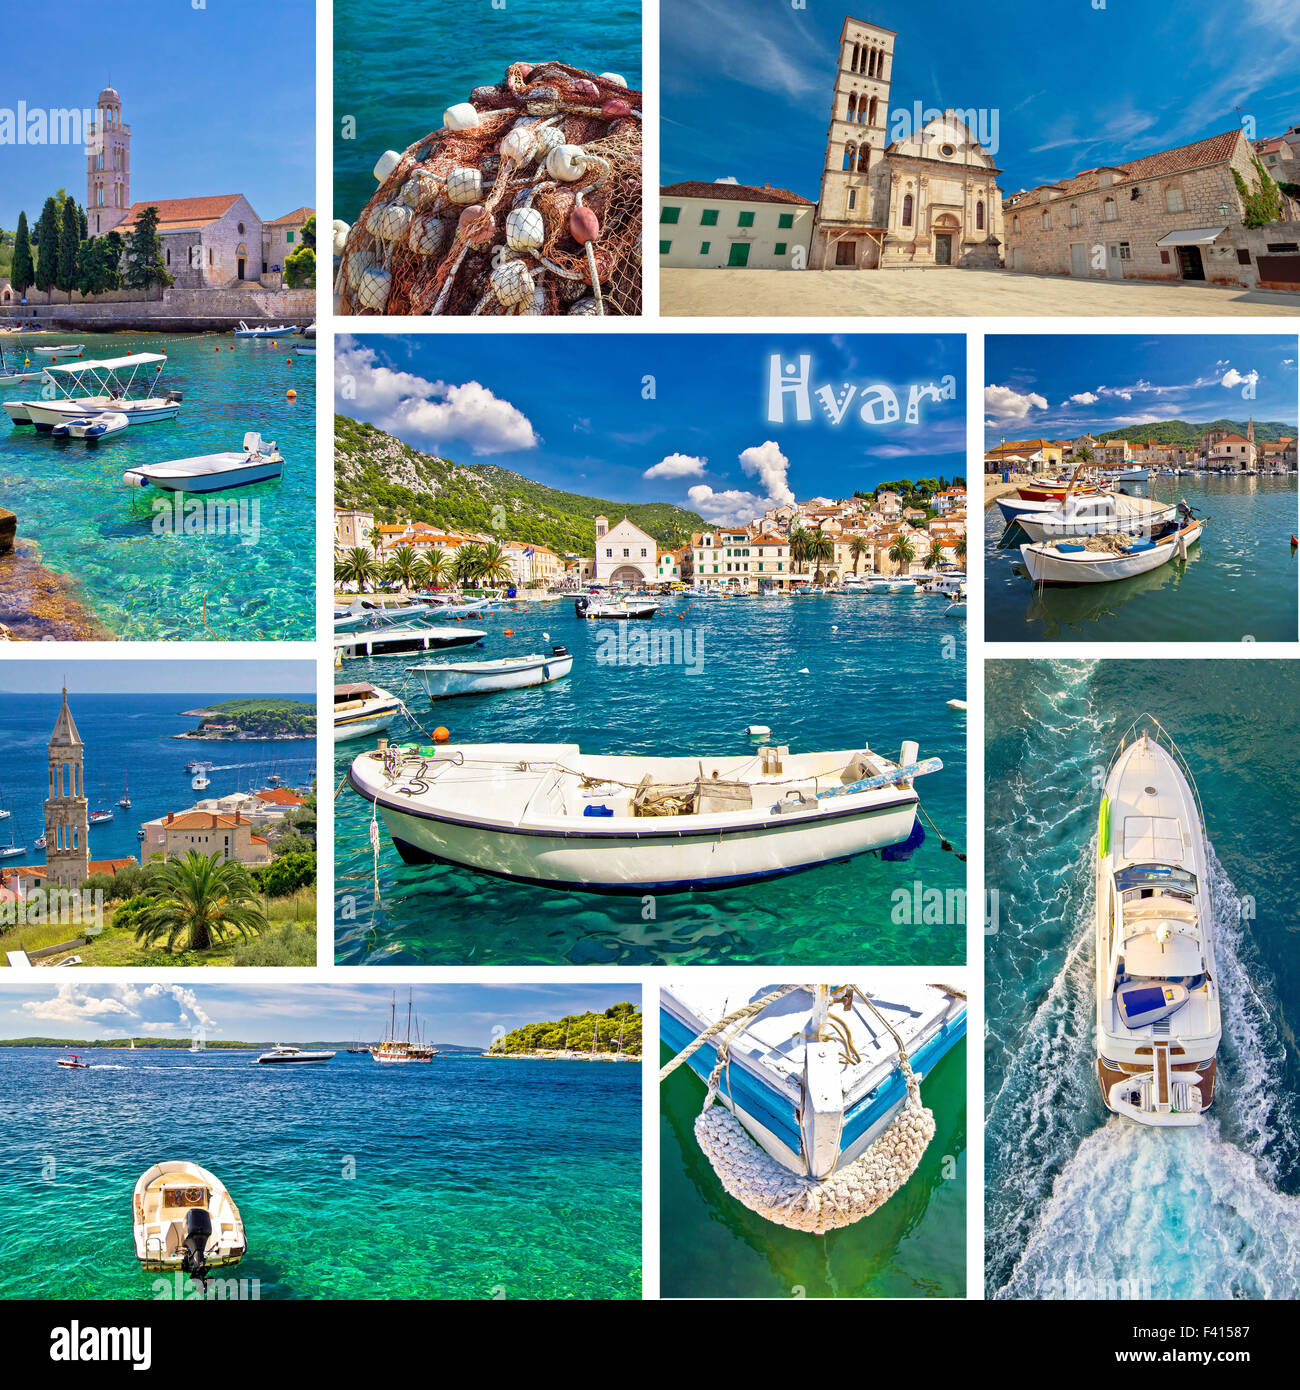 L'île de Hvar destination collage Banque D'Images